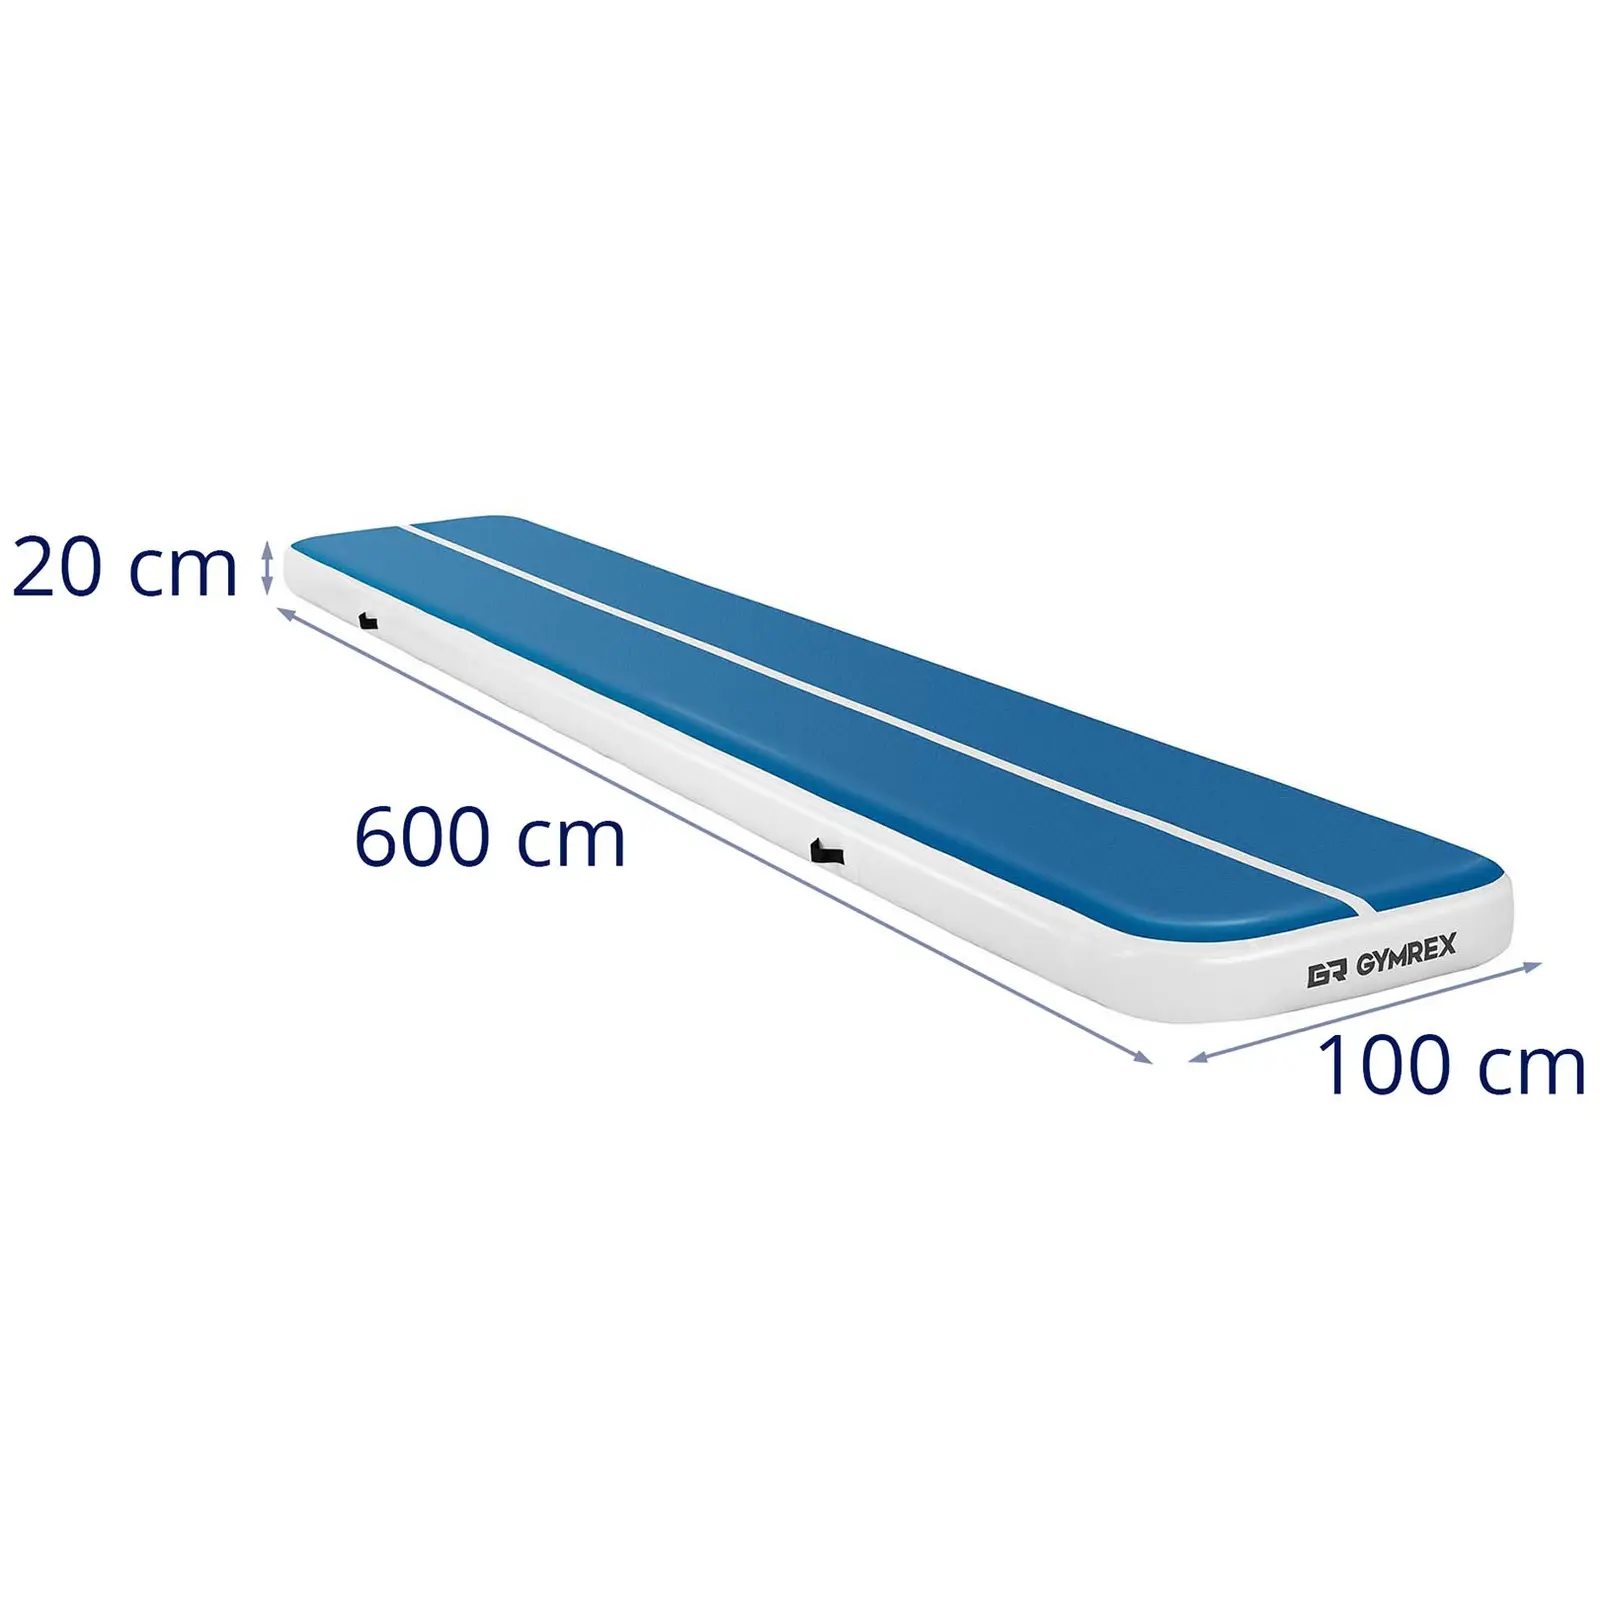 Napihljiva podloga za telovadbo - 600 x 100 x 20 cm - 300 kg - modra/bela